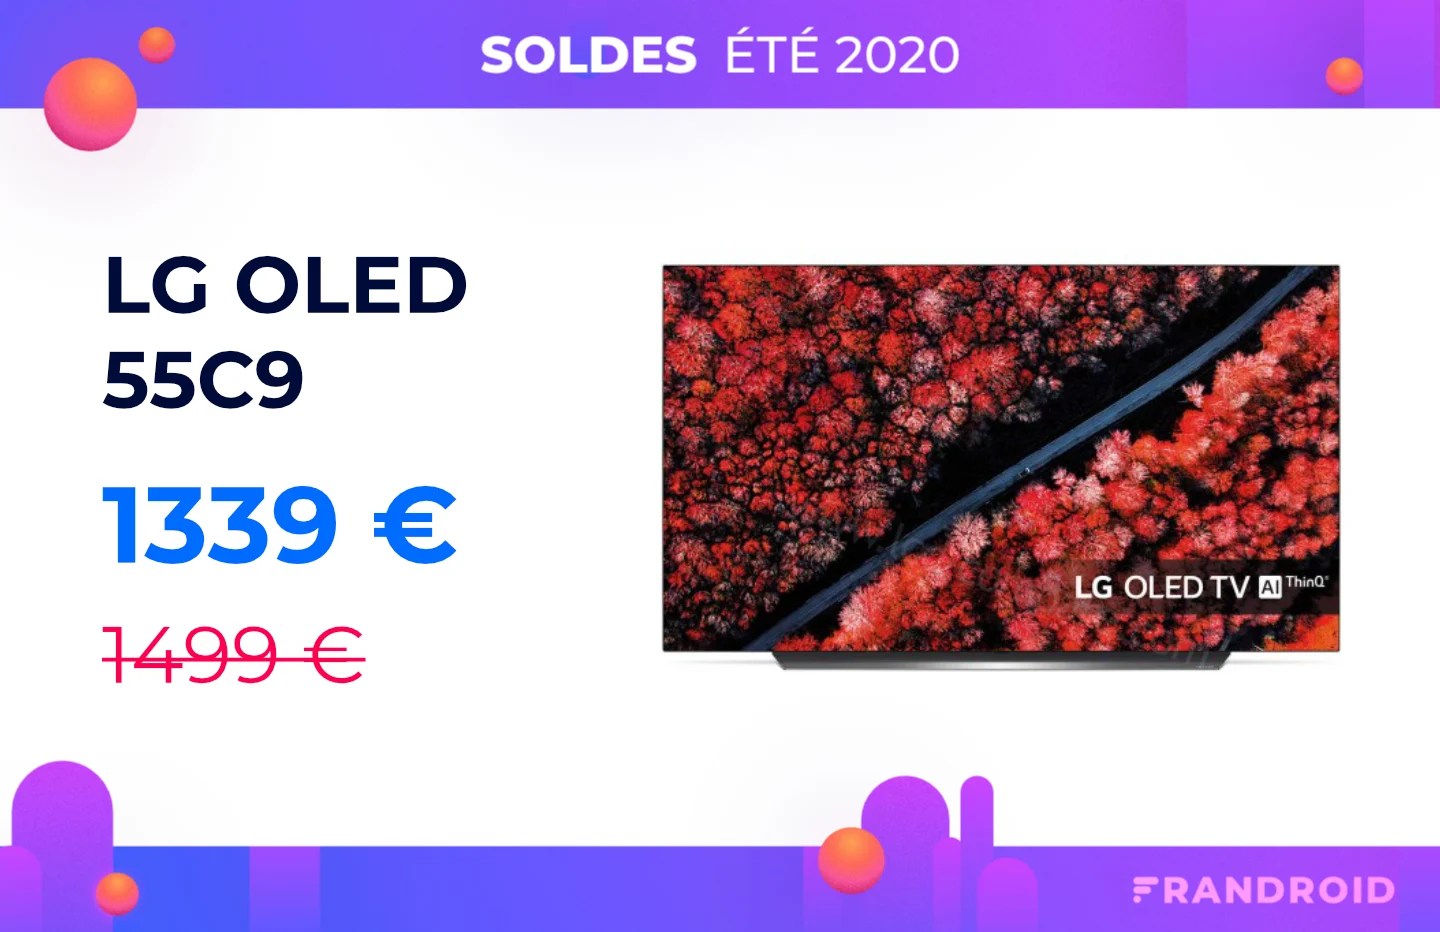 L’excellent TV LG OLED C9 en 55 pouces baisse son prix pour les soldes